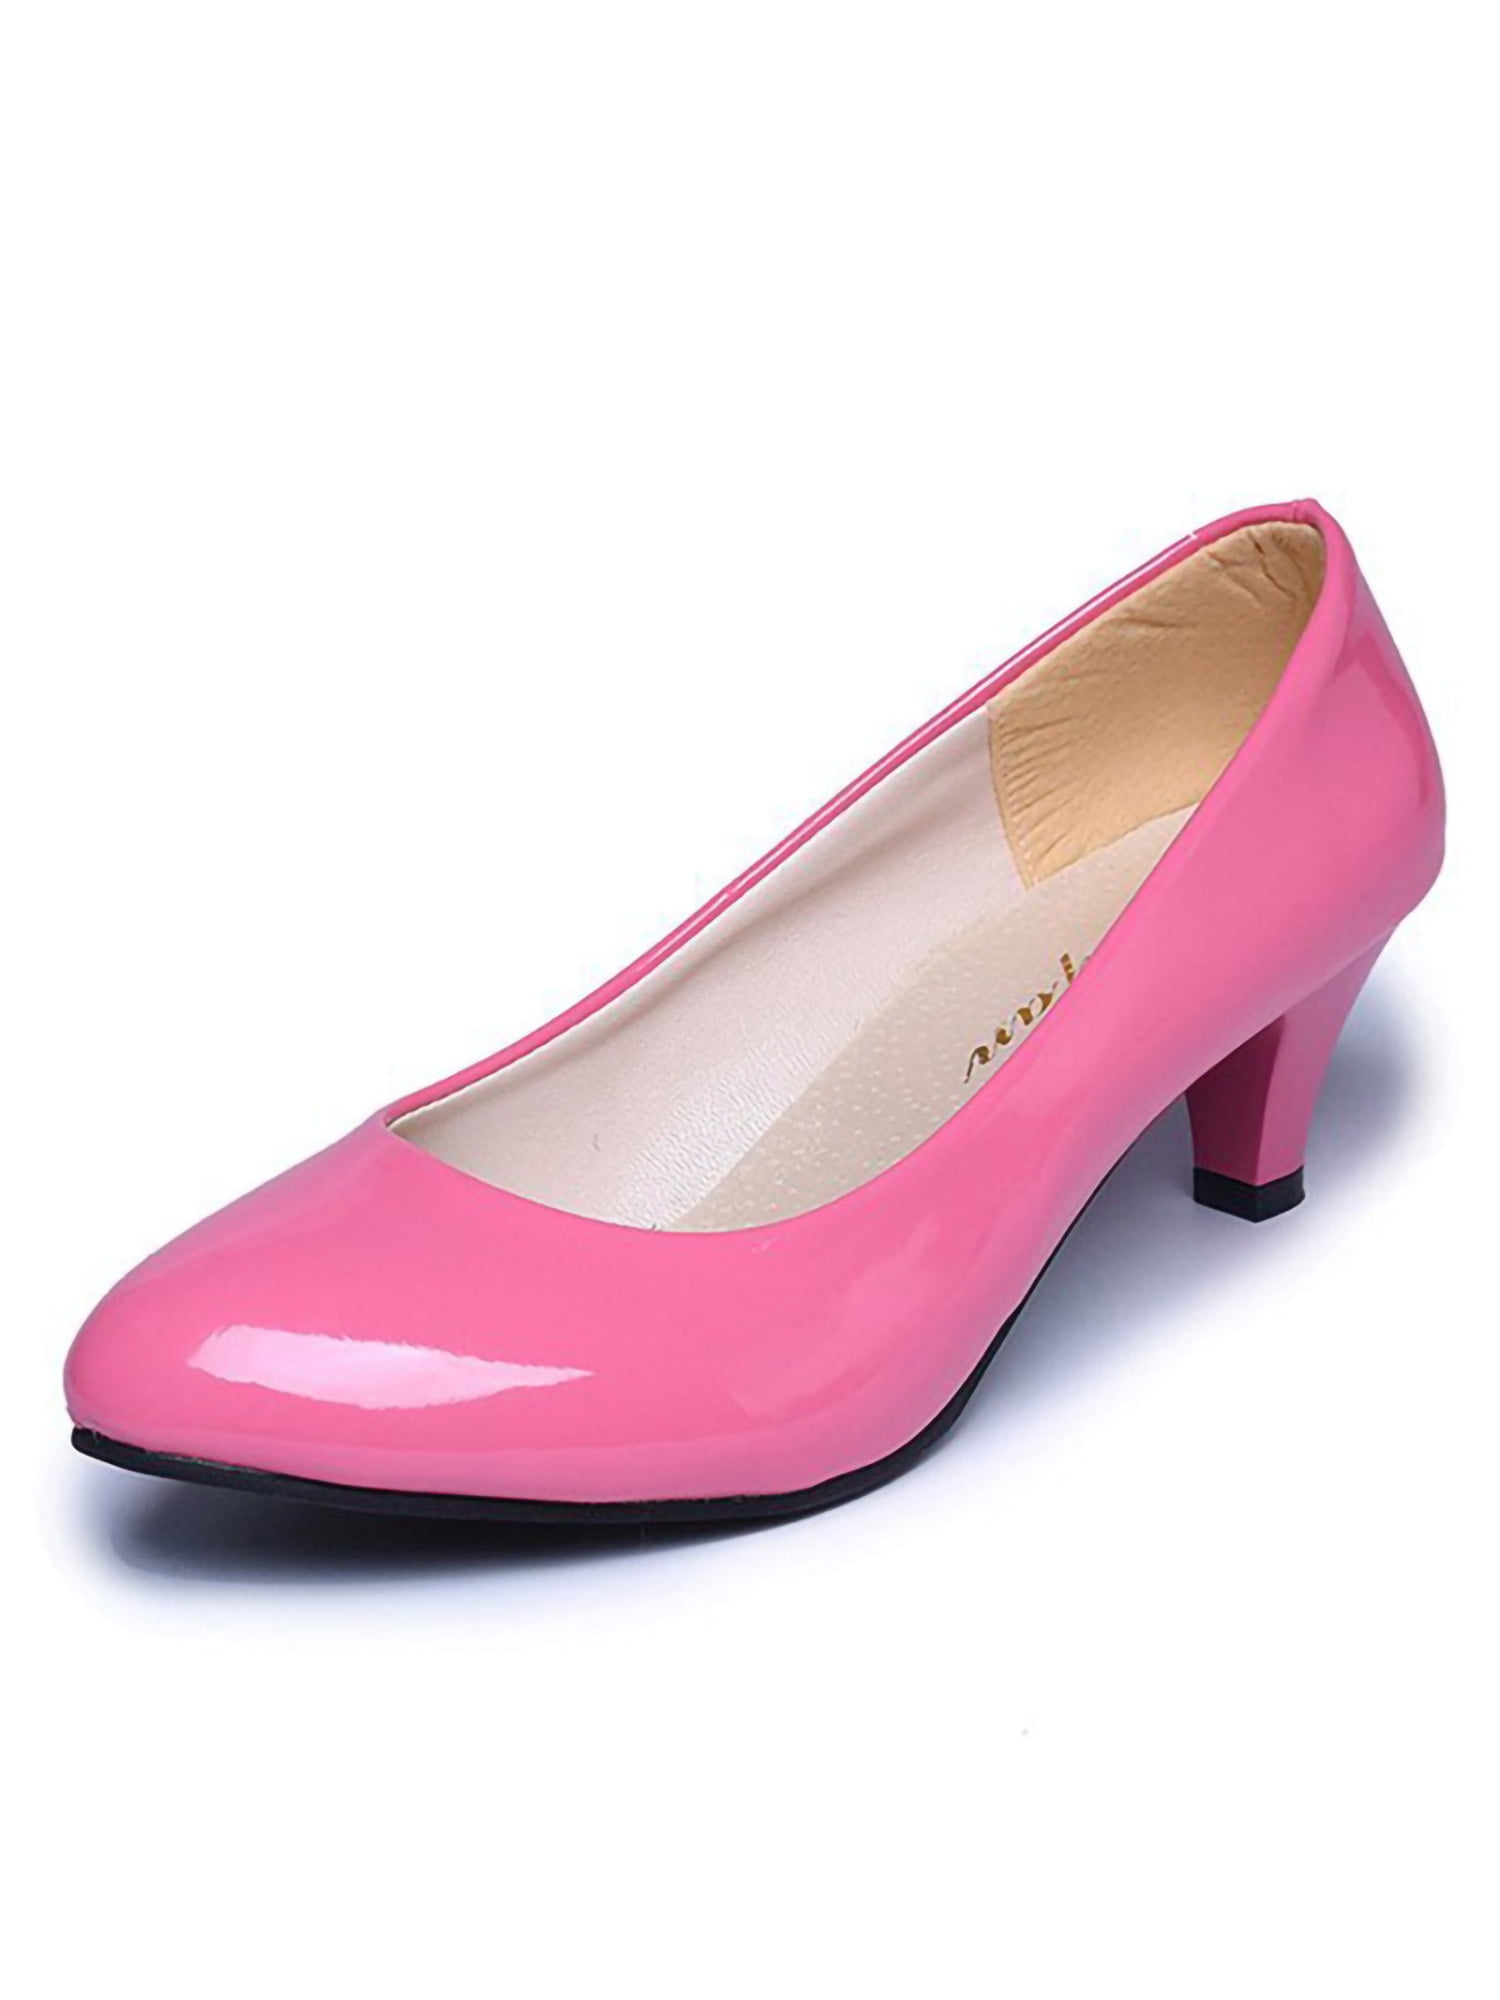 Wear it Pink !, color, heels, pink, shoes, HD wallpaper | Peakpx